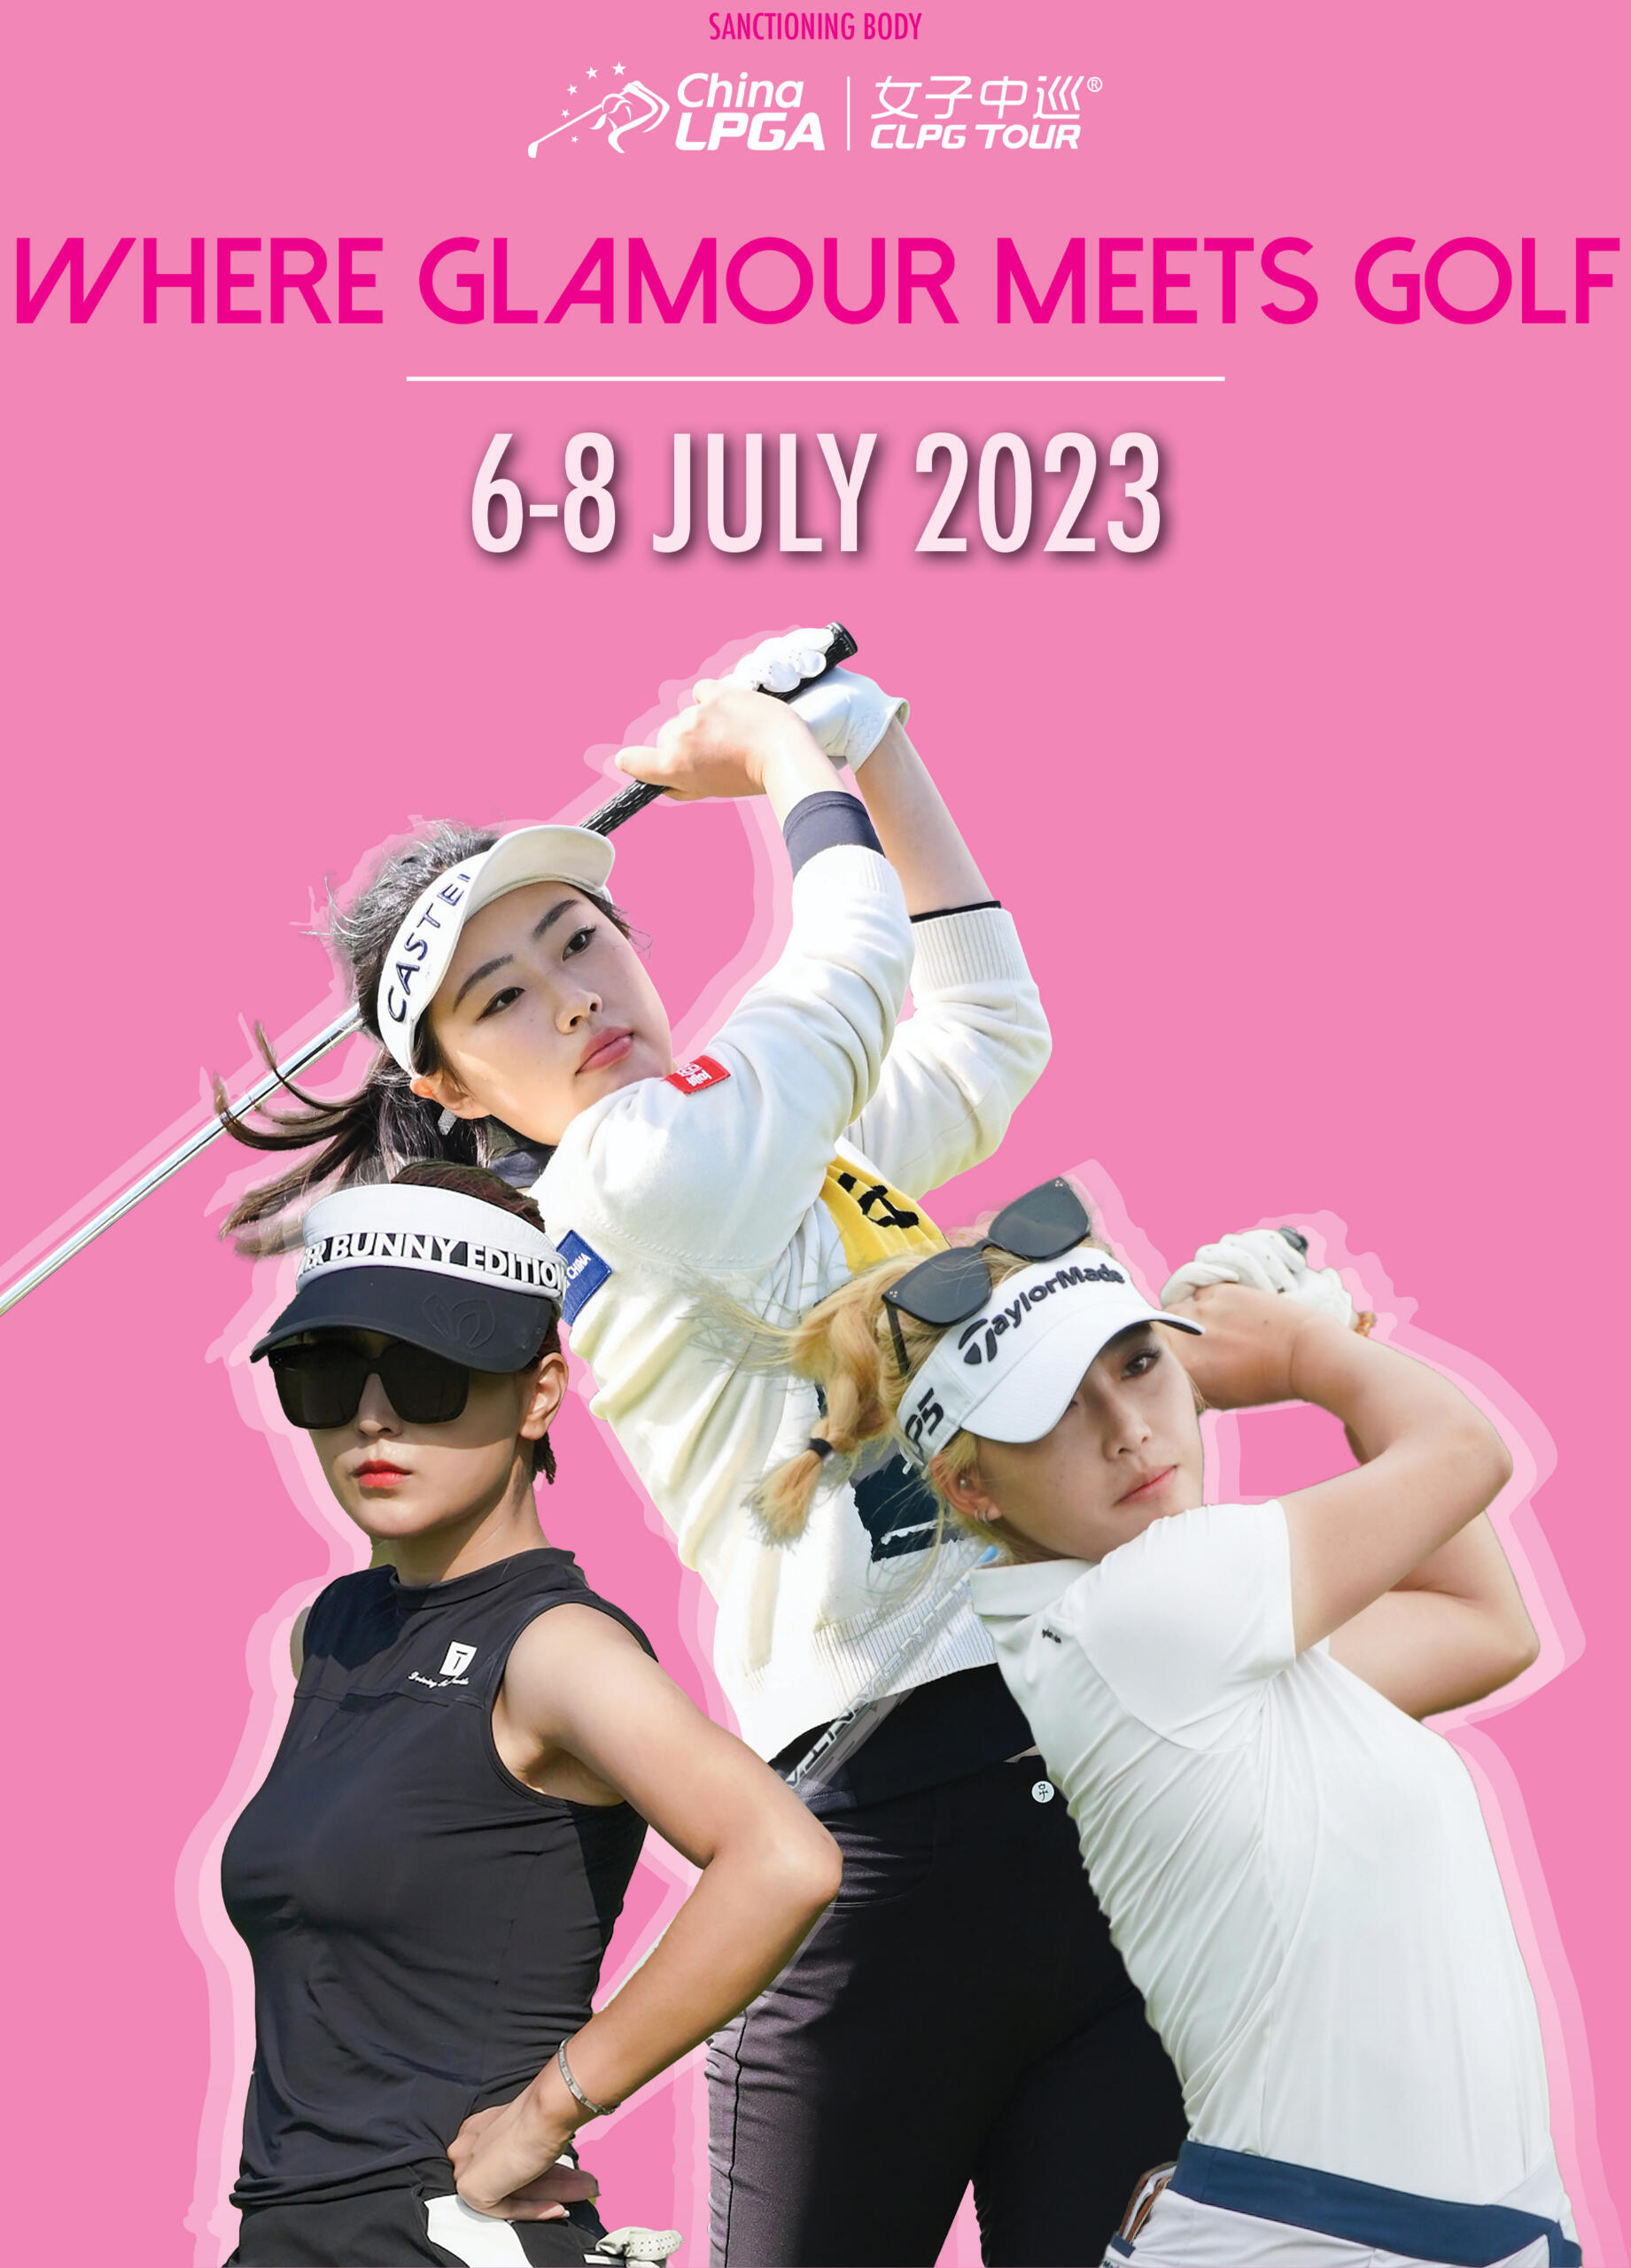 Singapore Ladies Masters